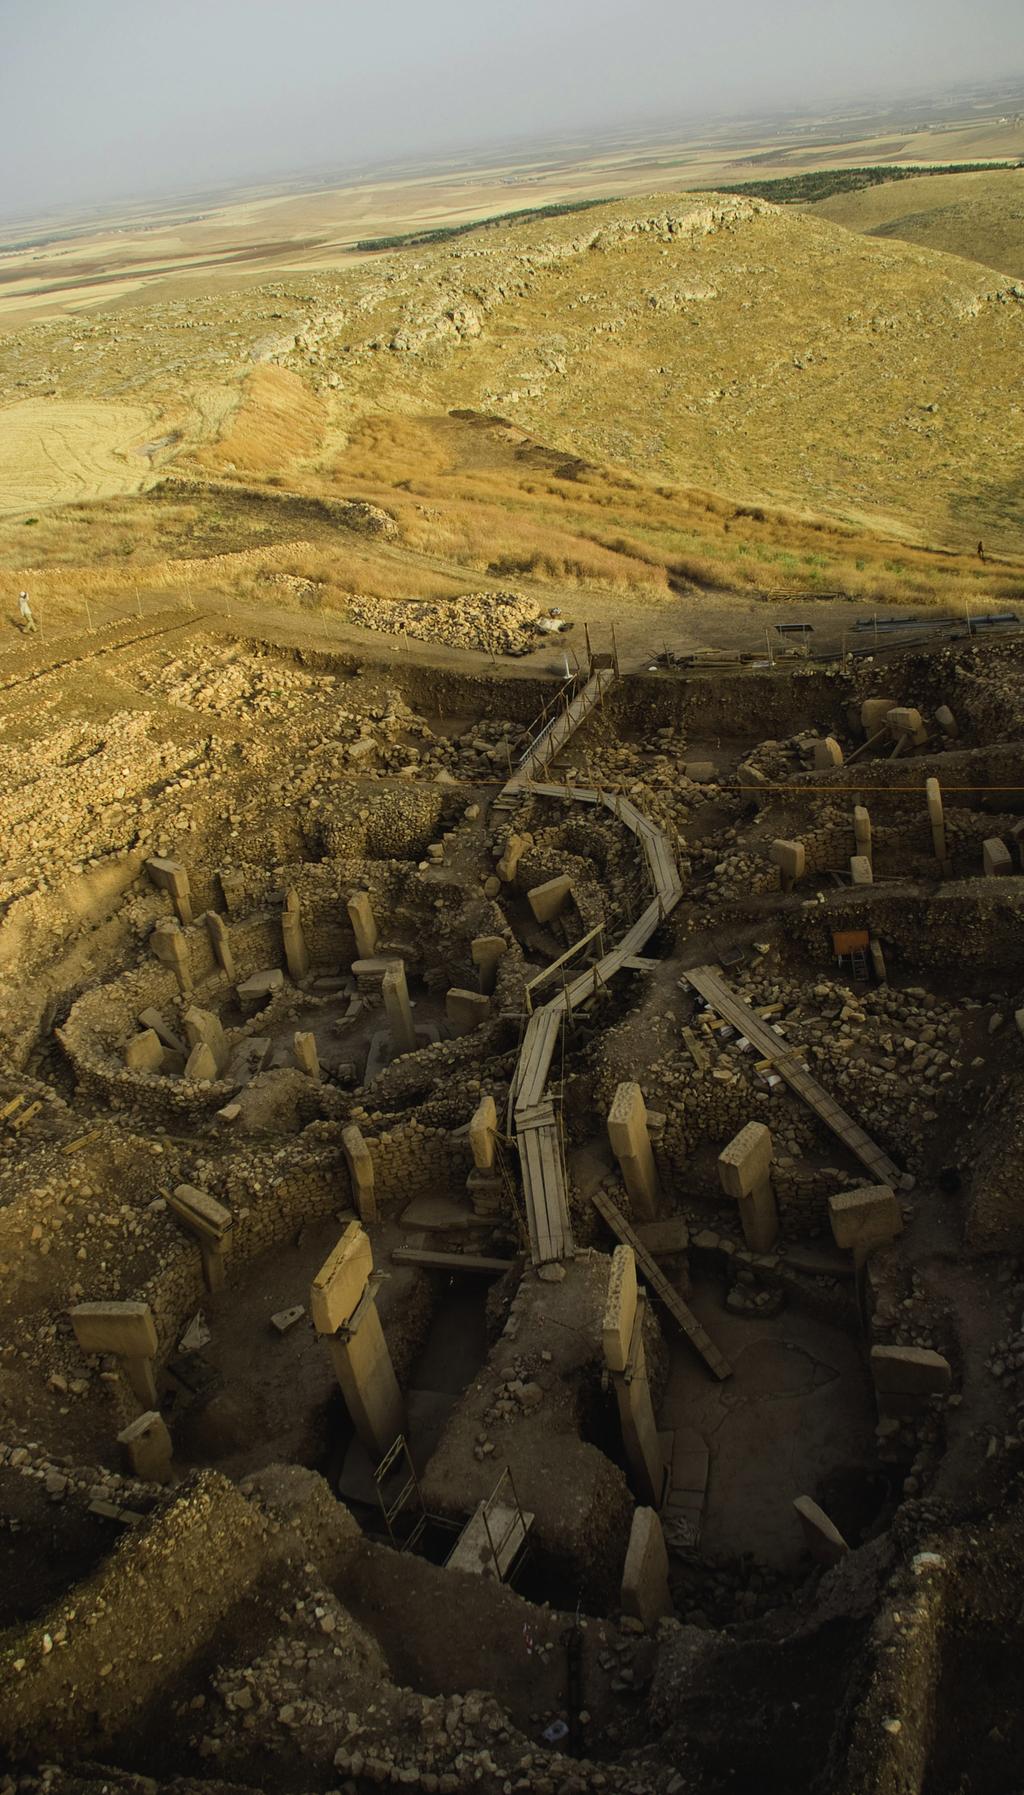 Dünyanın En Eski ve En Büyük Tapınma Alanı: Göbekli Tepe Anadolu coğrafyasında bulunan dikili T taşlarla ilk kez Urfa yakınlarındaki Nevali Çori de karşılaşıldı.